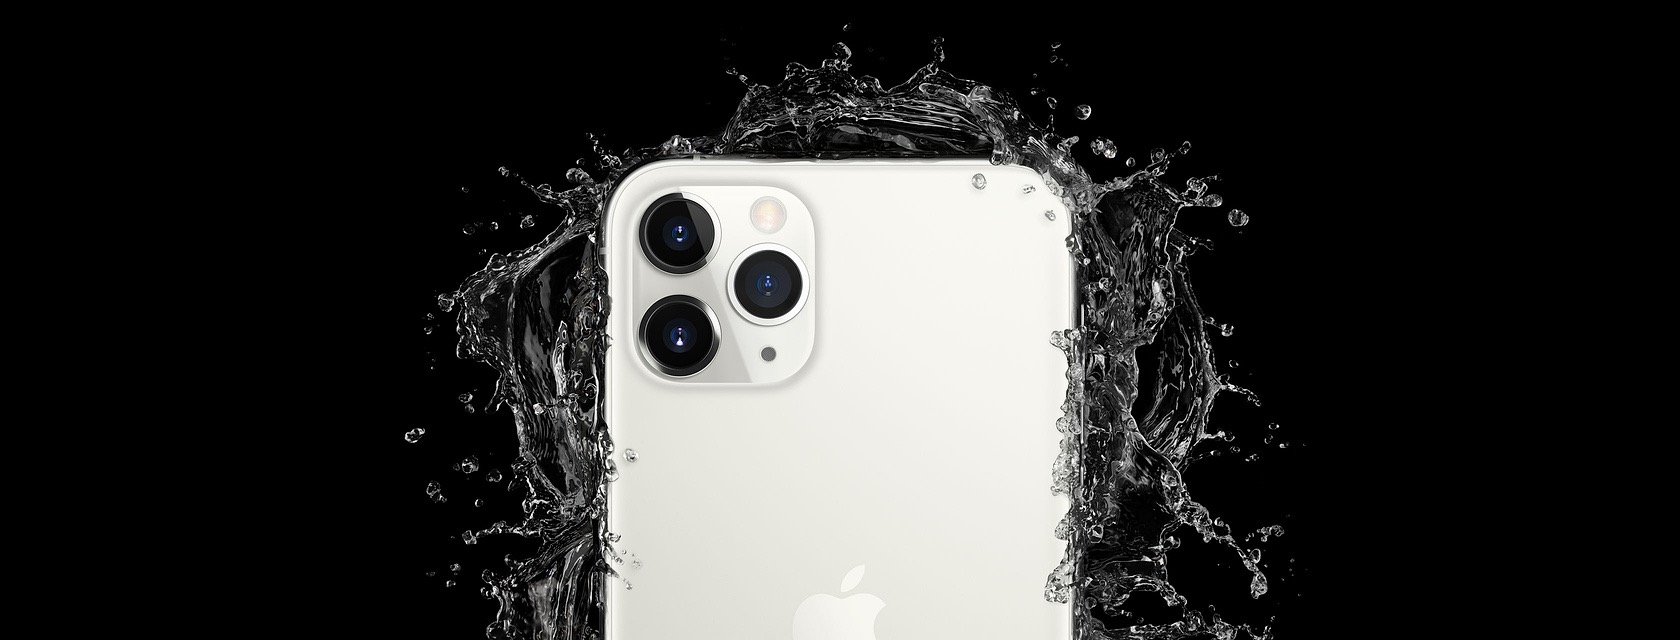 Apple iPhone 11 Pro blanc